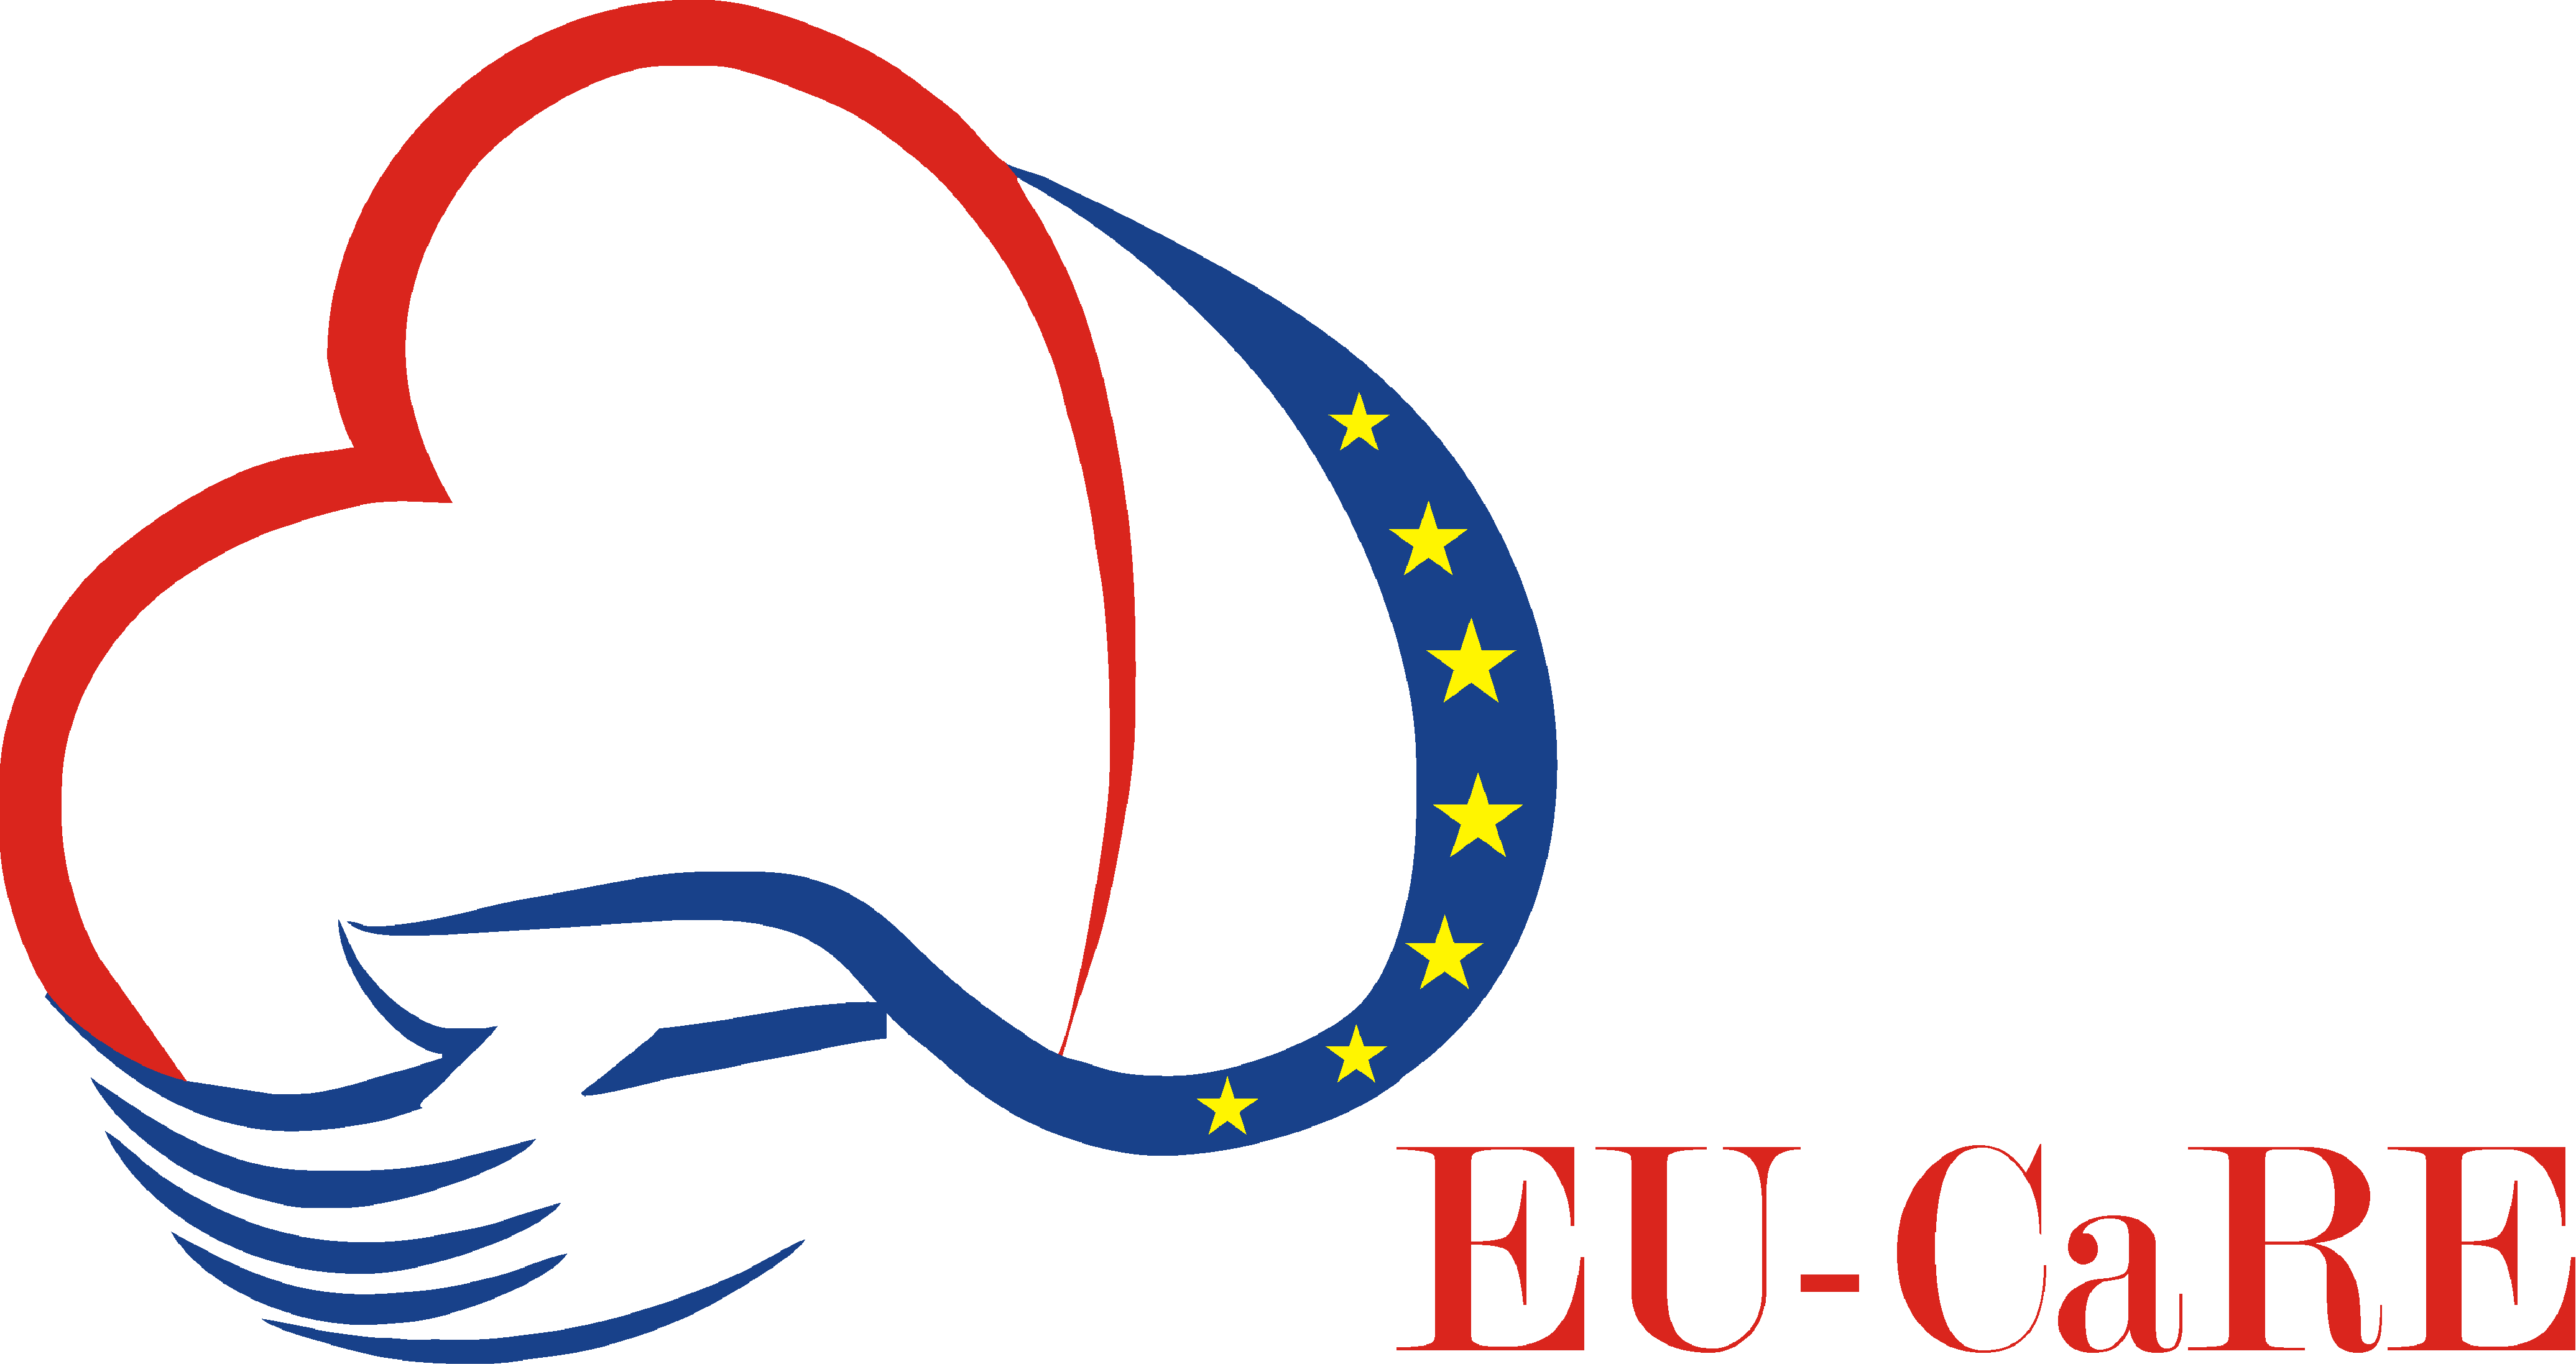 Care.org Logo - Home - EU-CaRE